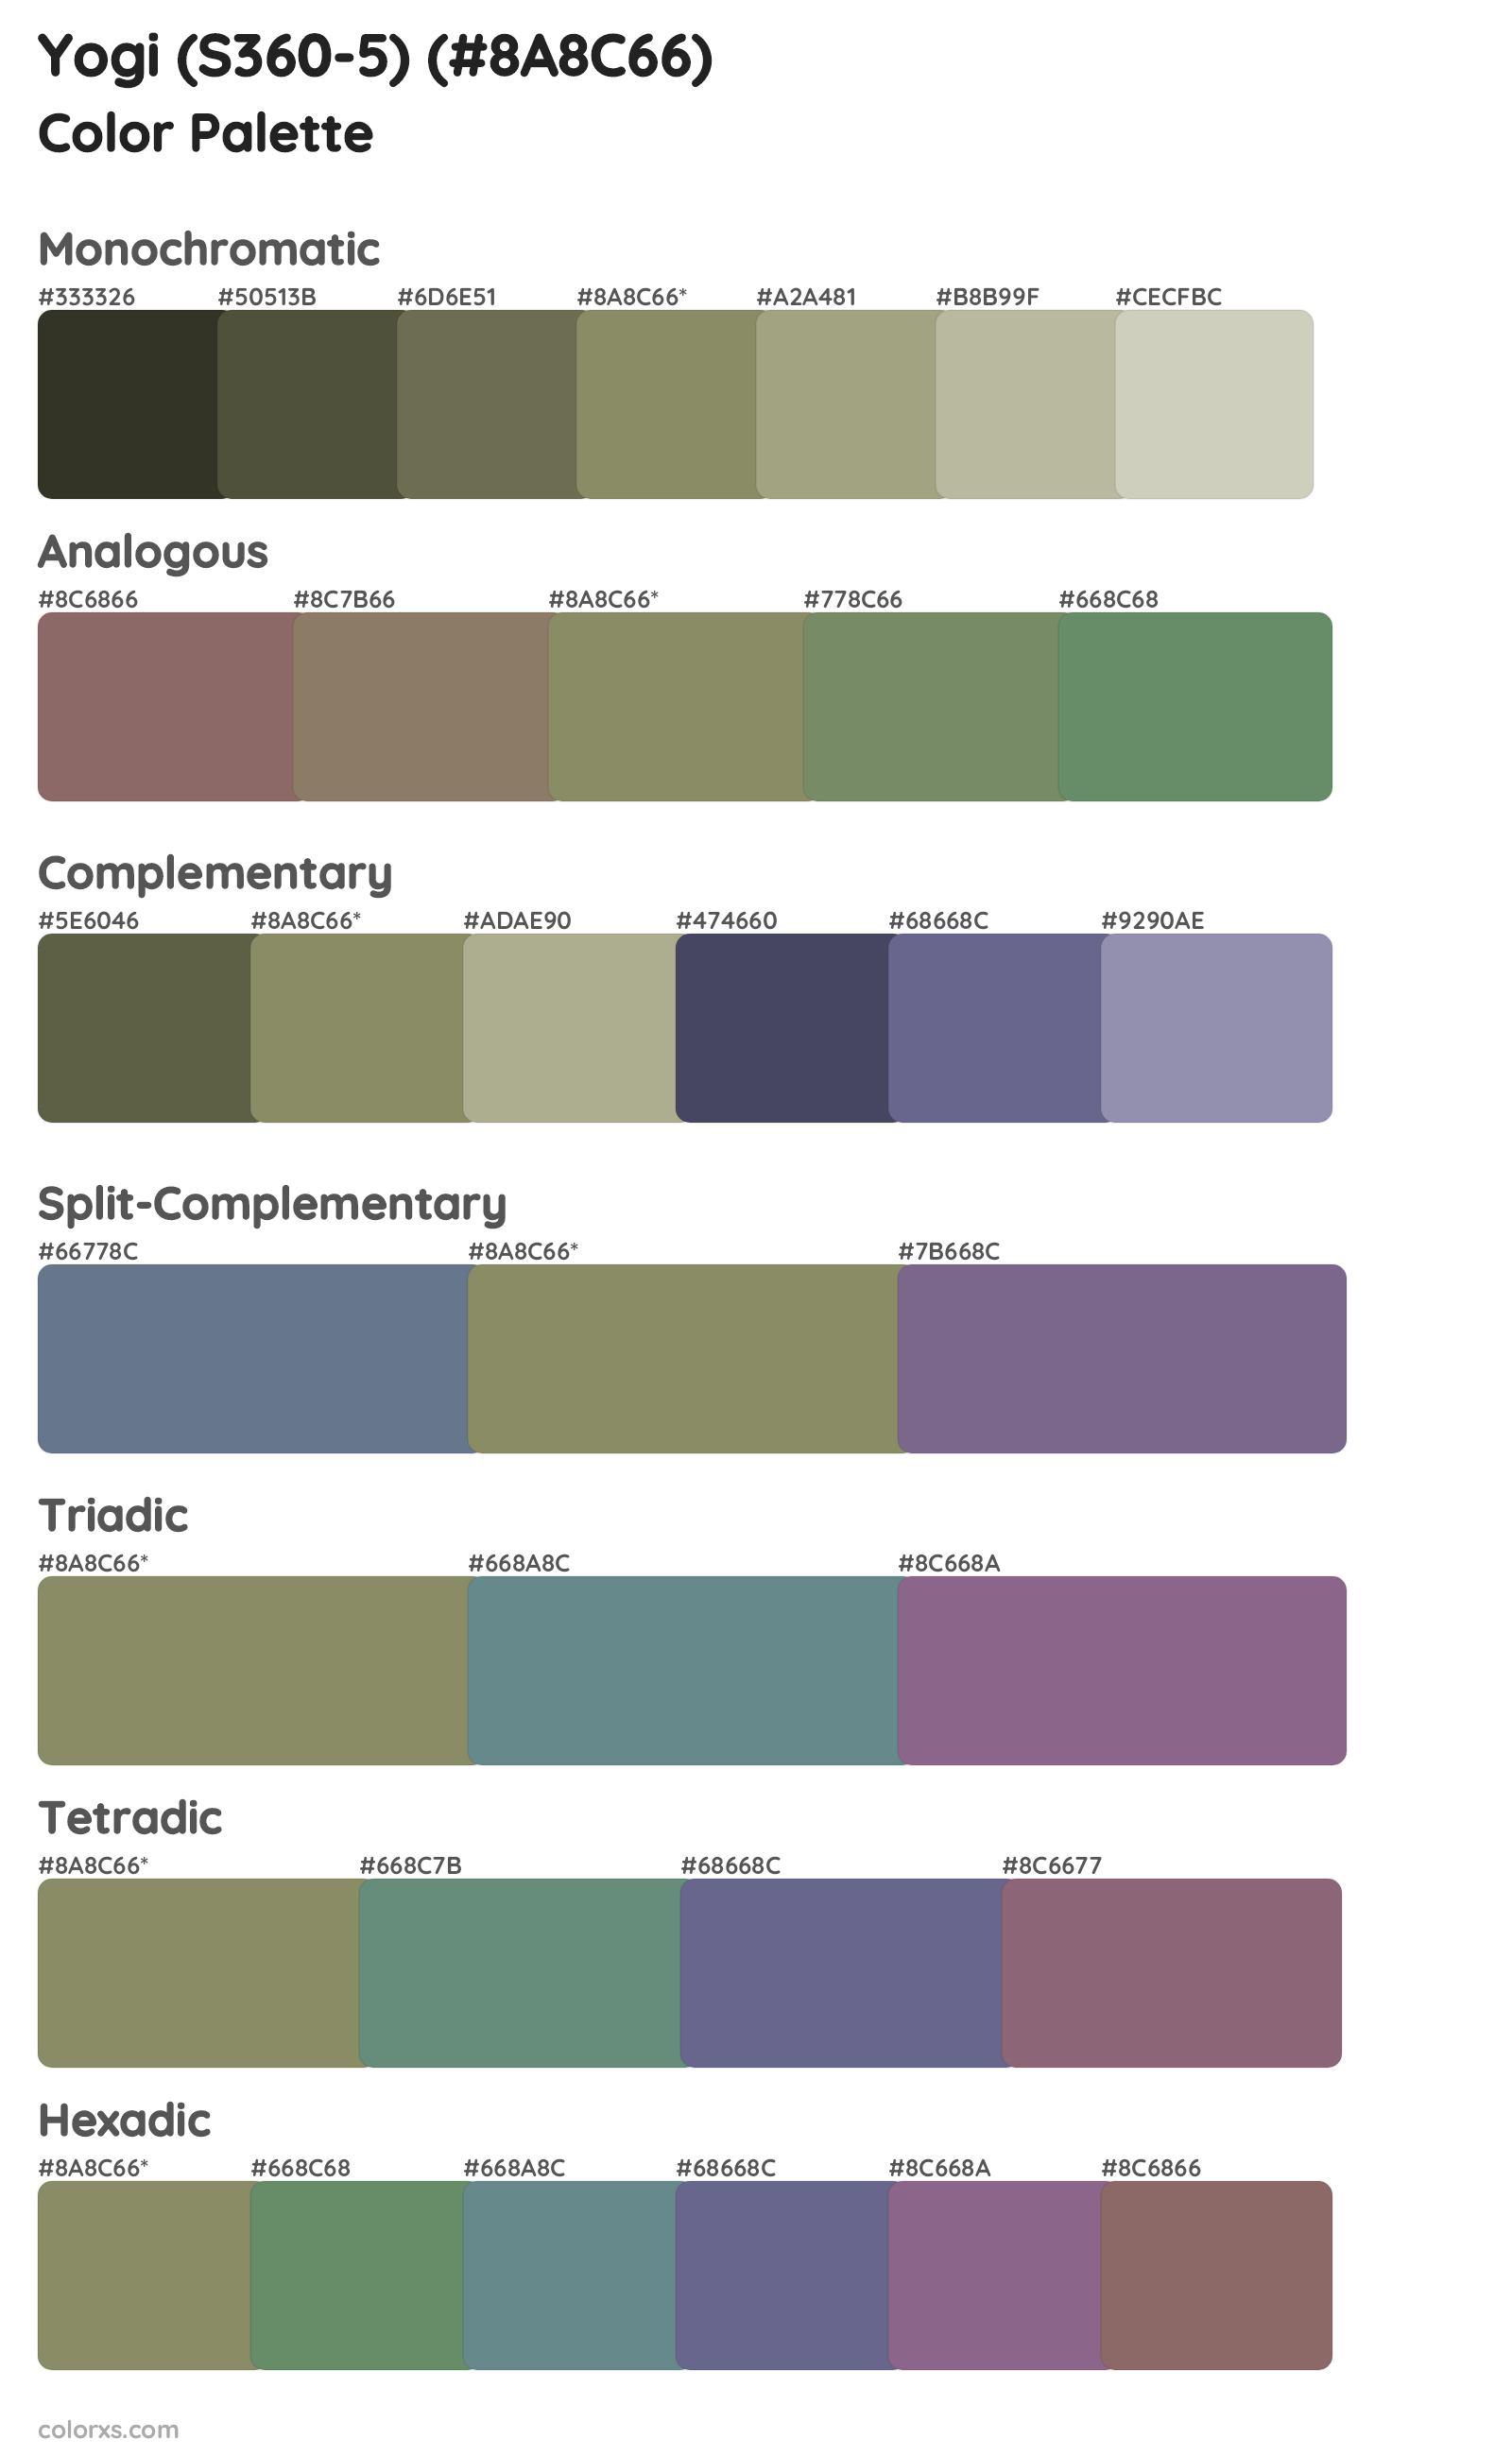 Yogi (S360-5) Color Scheme Palettes